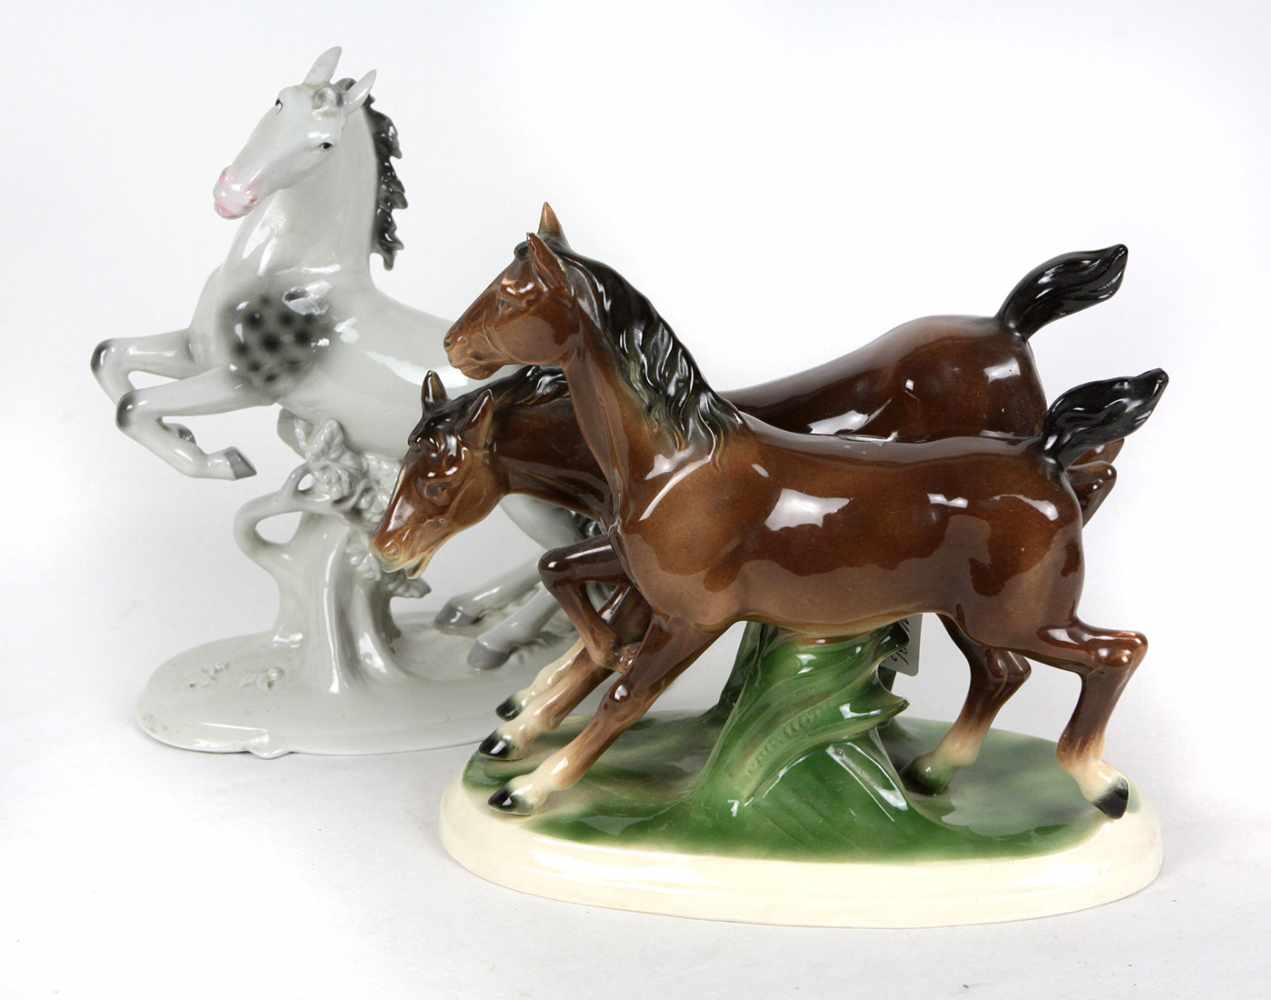 2 Pferdeskulpturen Porzellan mit Manufakturmarke FPorzellanfabrik Fasold & Stauch in Bock-Wallendorf